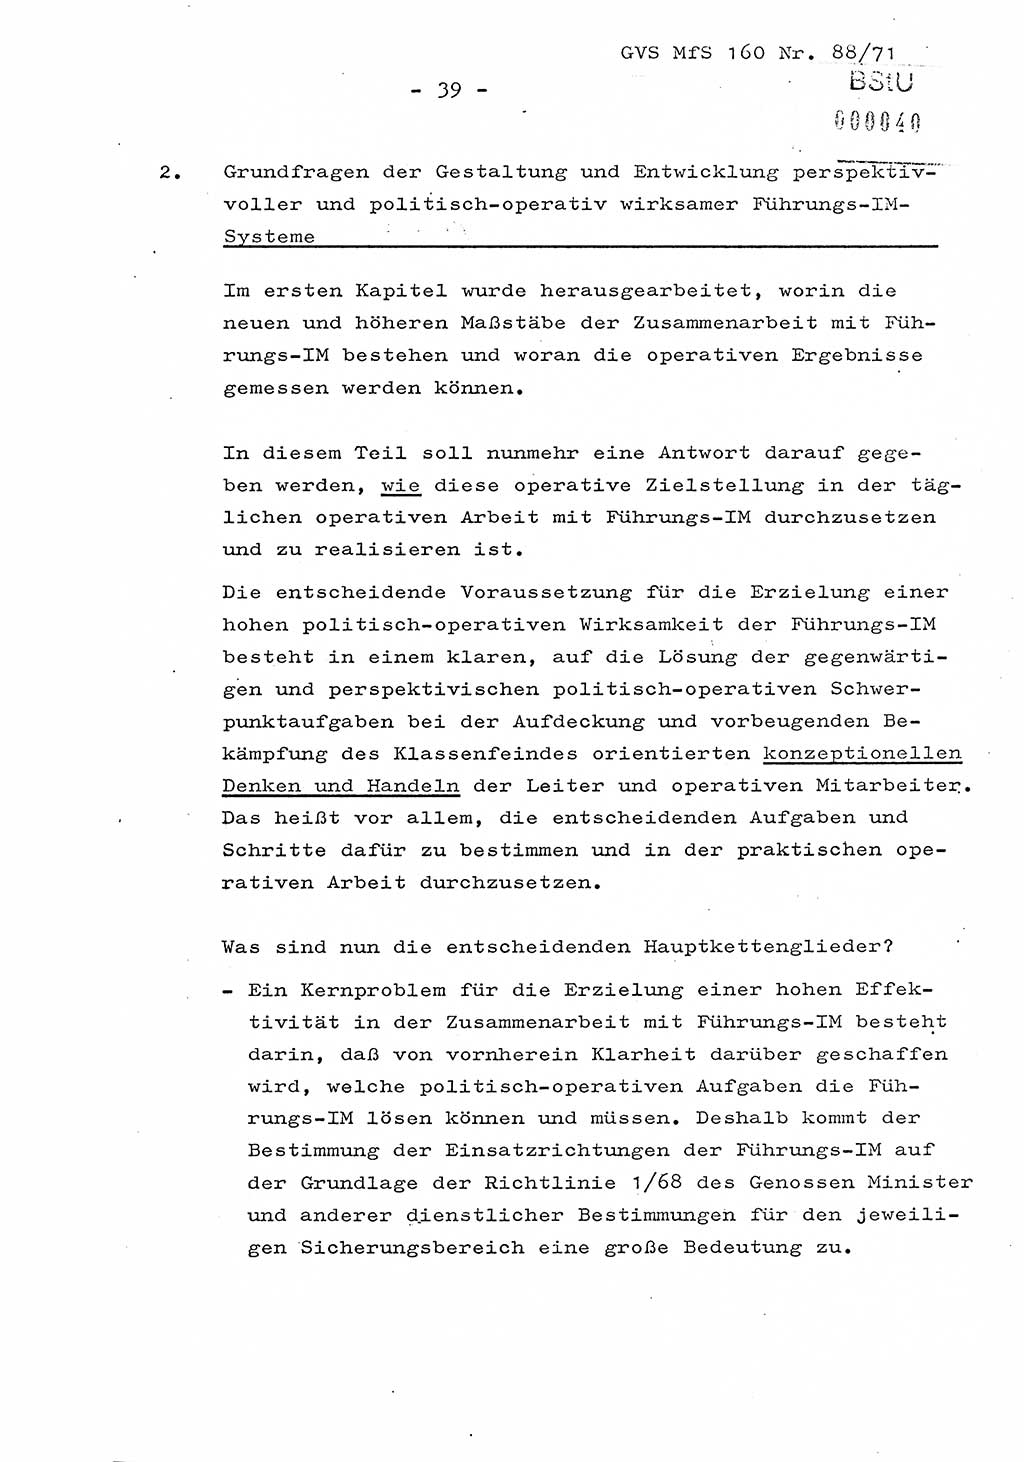 Dissertation Oberstleutnant Josef Schwarz (BV Schwerin), Major Fritz Amm (JHS), Hauptmann Peter Gräßler (JHS), Ministerium für Staatssicherheit (MfS) [Deutsche Demokratische Republik (DDR)], Juristische Hochschule (JHS), Geheime Verschlußsache (GVS) 160-88/71, Potsdam 1972, Seite 39 (Diss. MfS DDR JHS GVS 160-88/71 1972, S. 39)